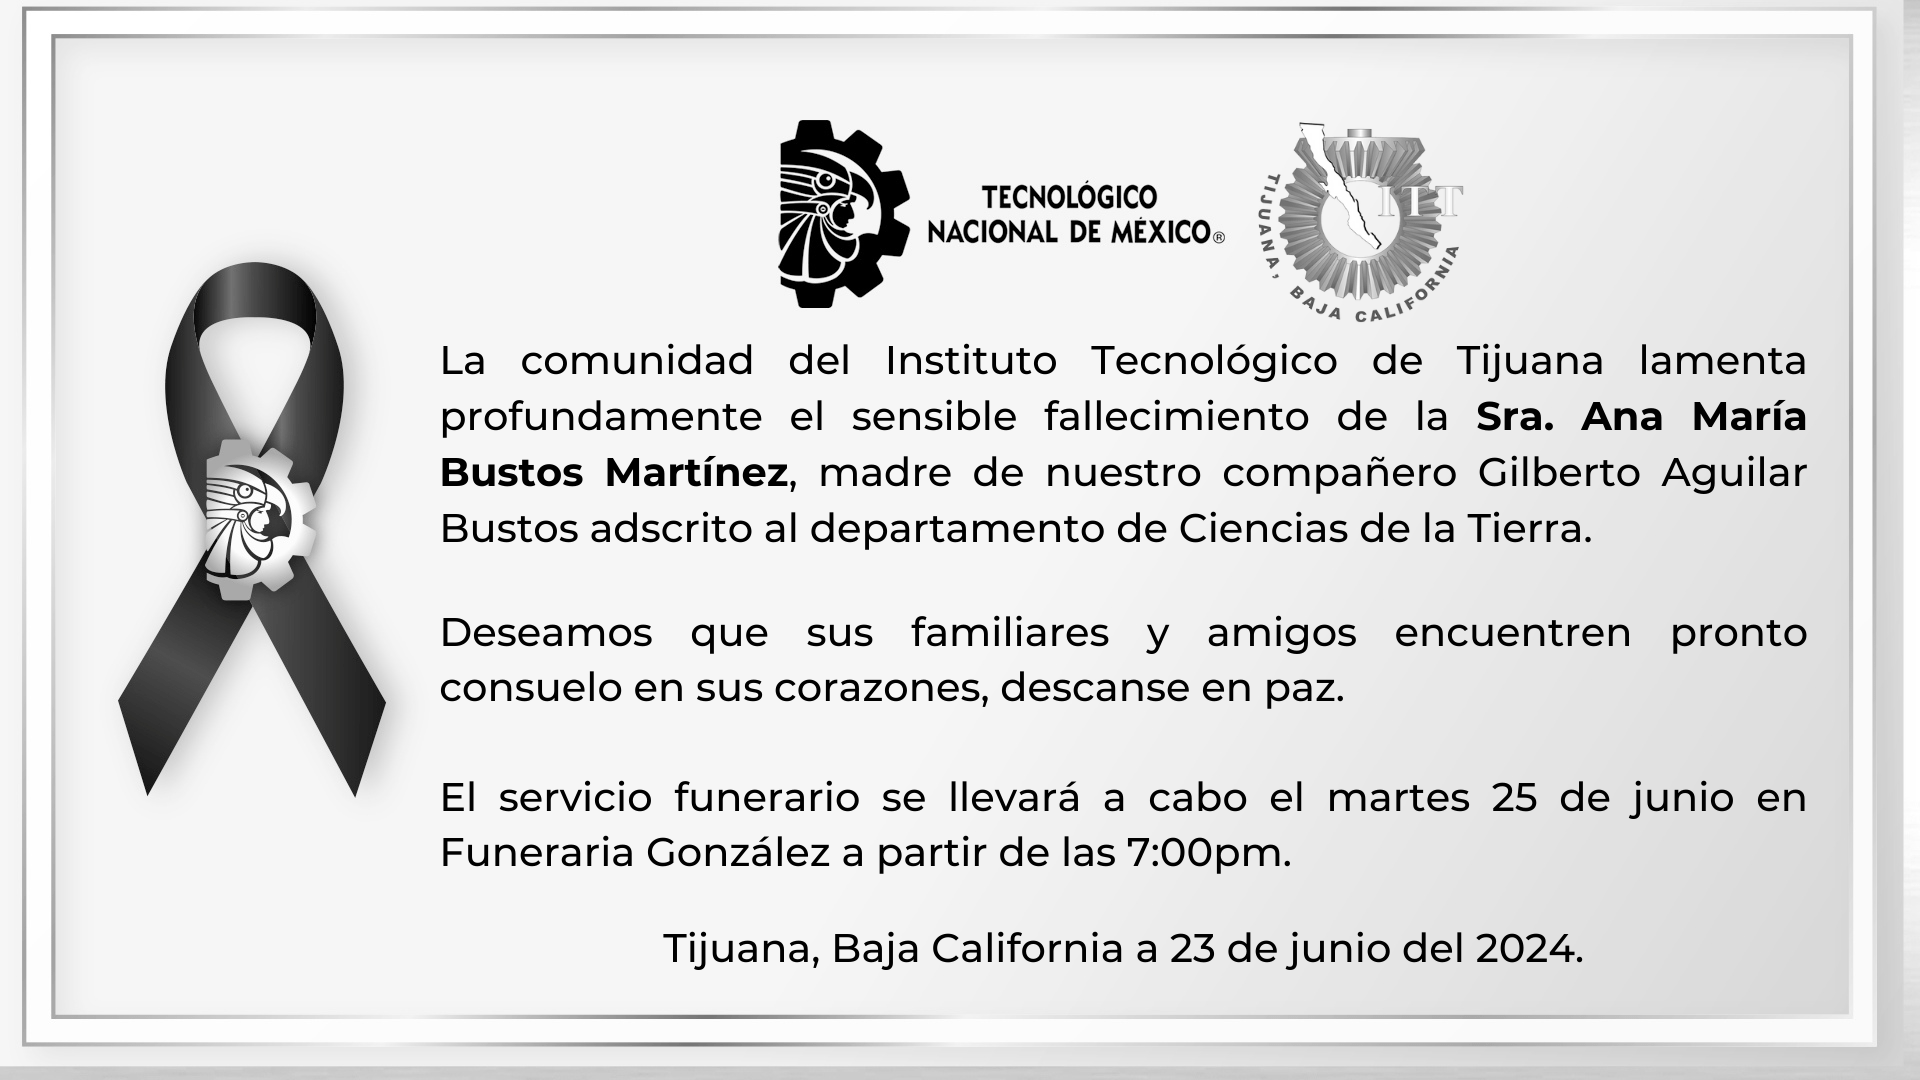 La comunidad del Instituto Tecnológico de Tijuana lamenta profundamente el sensible fallecimiento de la Sra. Ana María Bustos Martínez